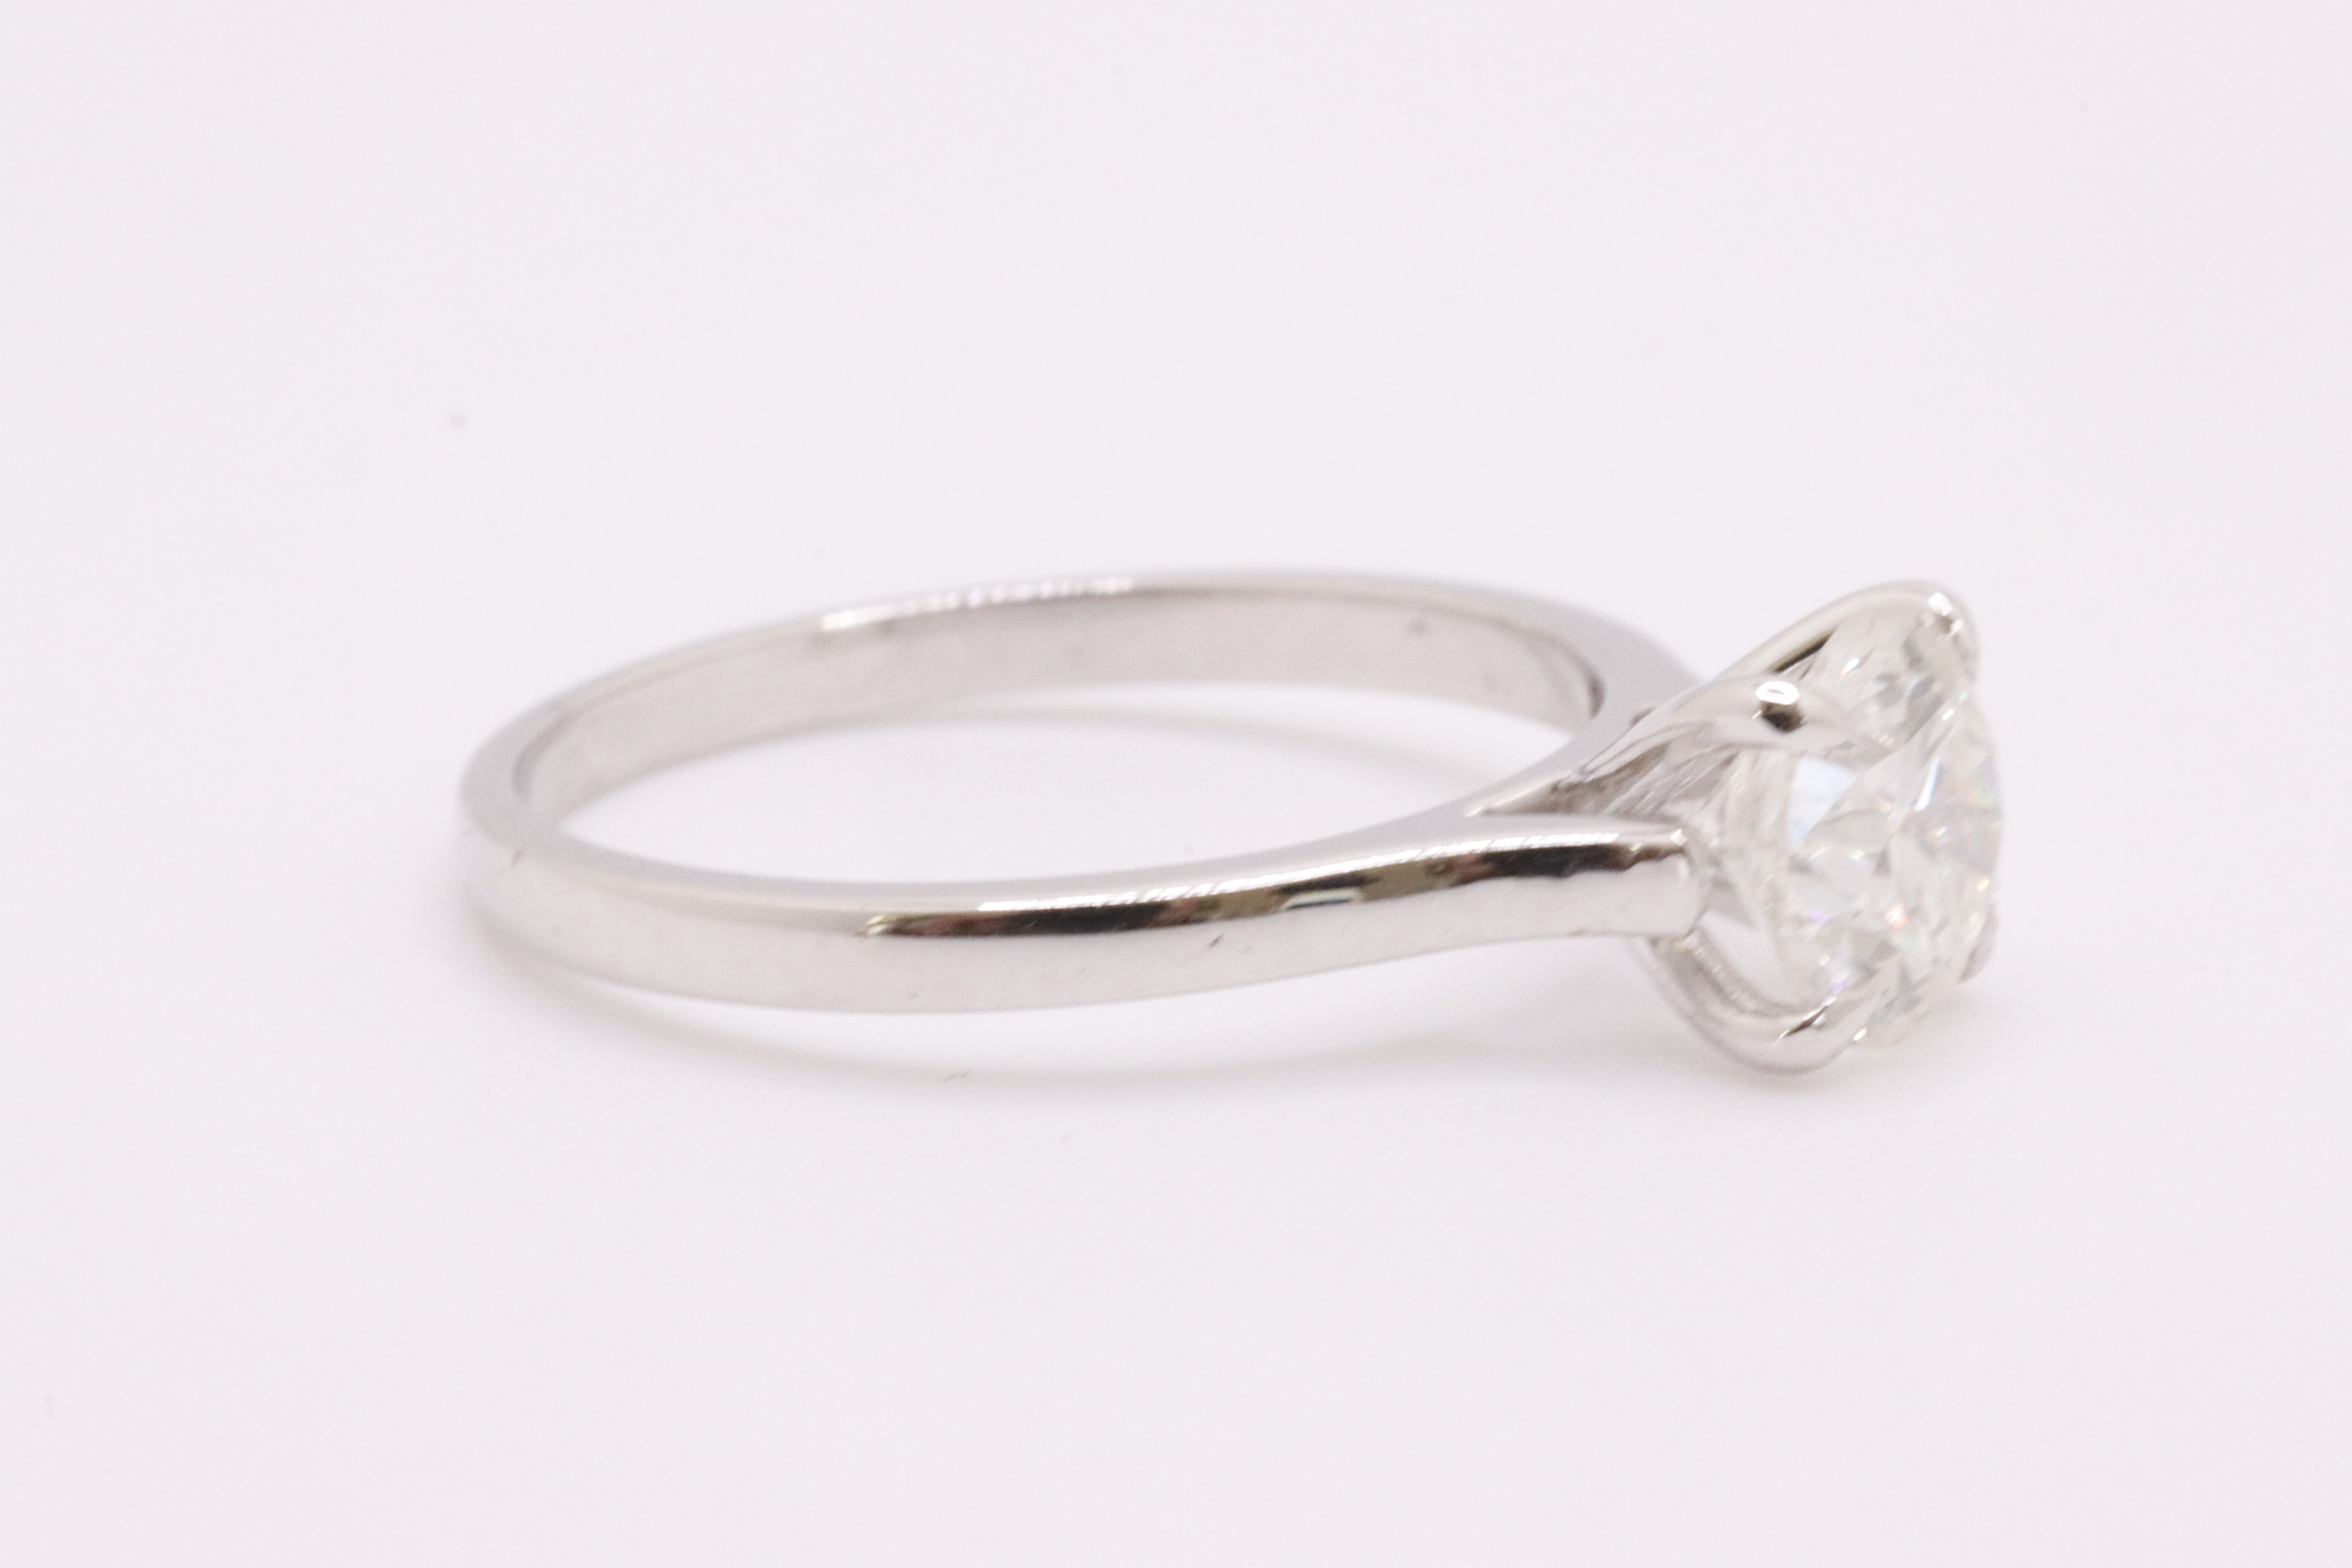 Round Brilliant Cut Natural Diamond Ring 1.09 Carat I Colour SI2 Clarity EX EX EX - GIA - Image 4 of 10